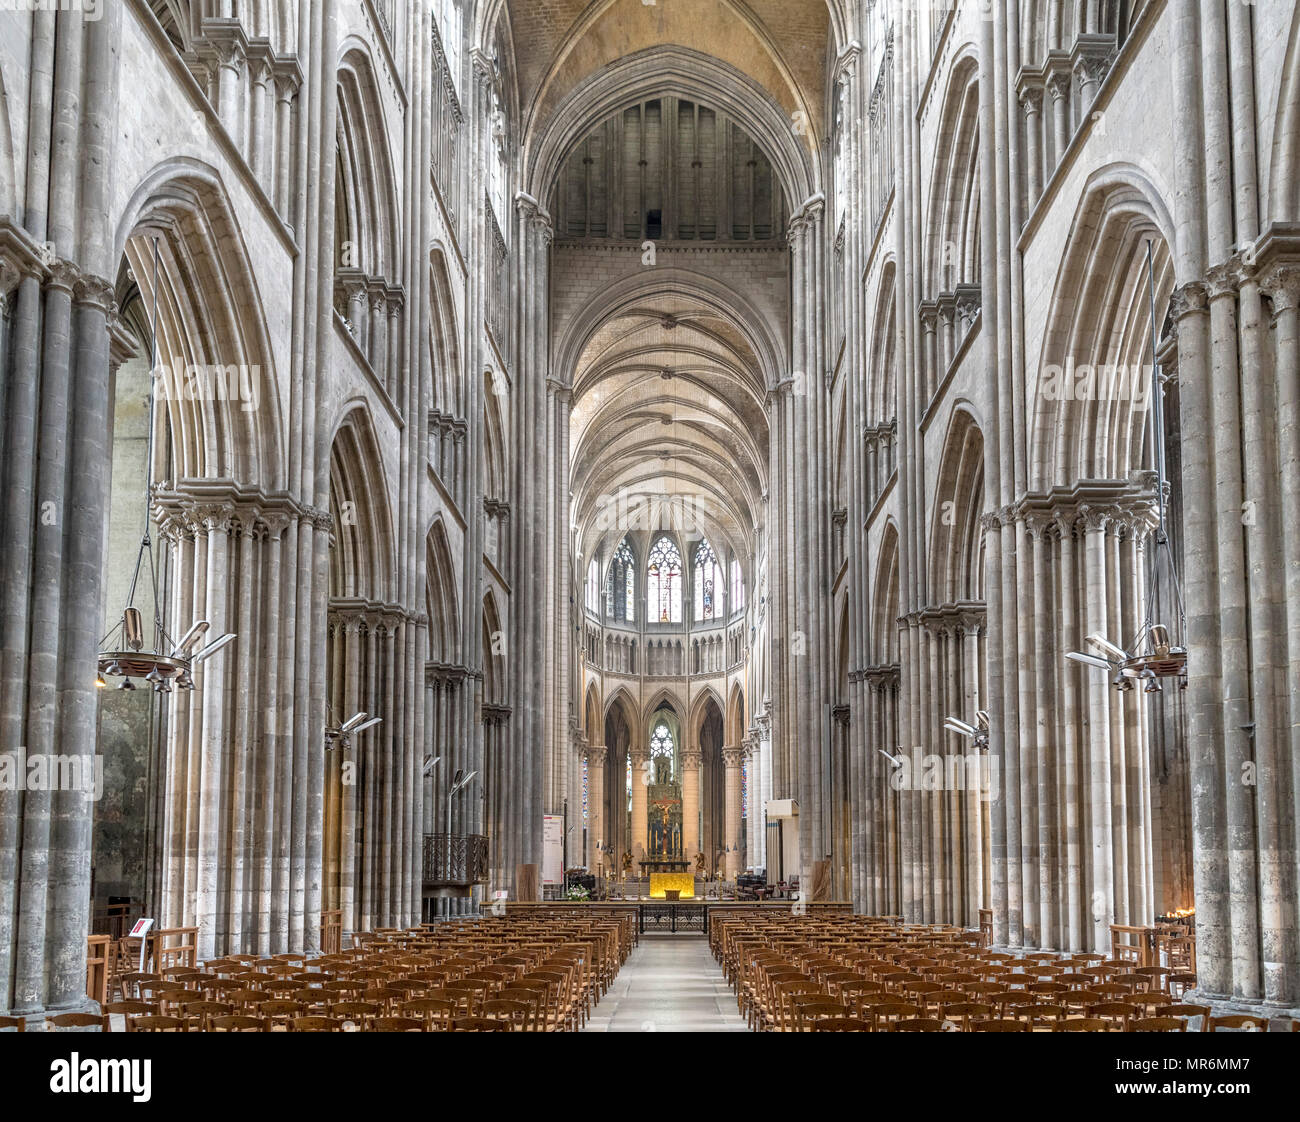 Interno della cattedrale di Rouen (Cathedrale primatiale Notre-Dame de l'Assomption de Rouen), Rouen, Normandia, Francia Foto Stock